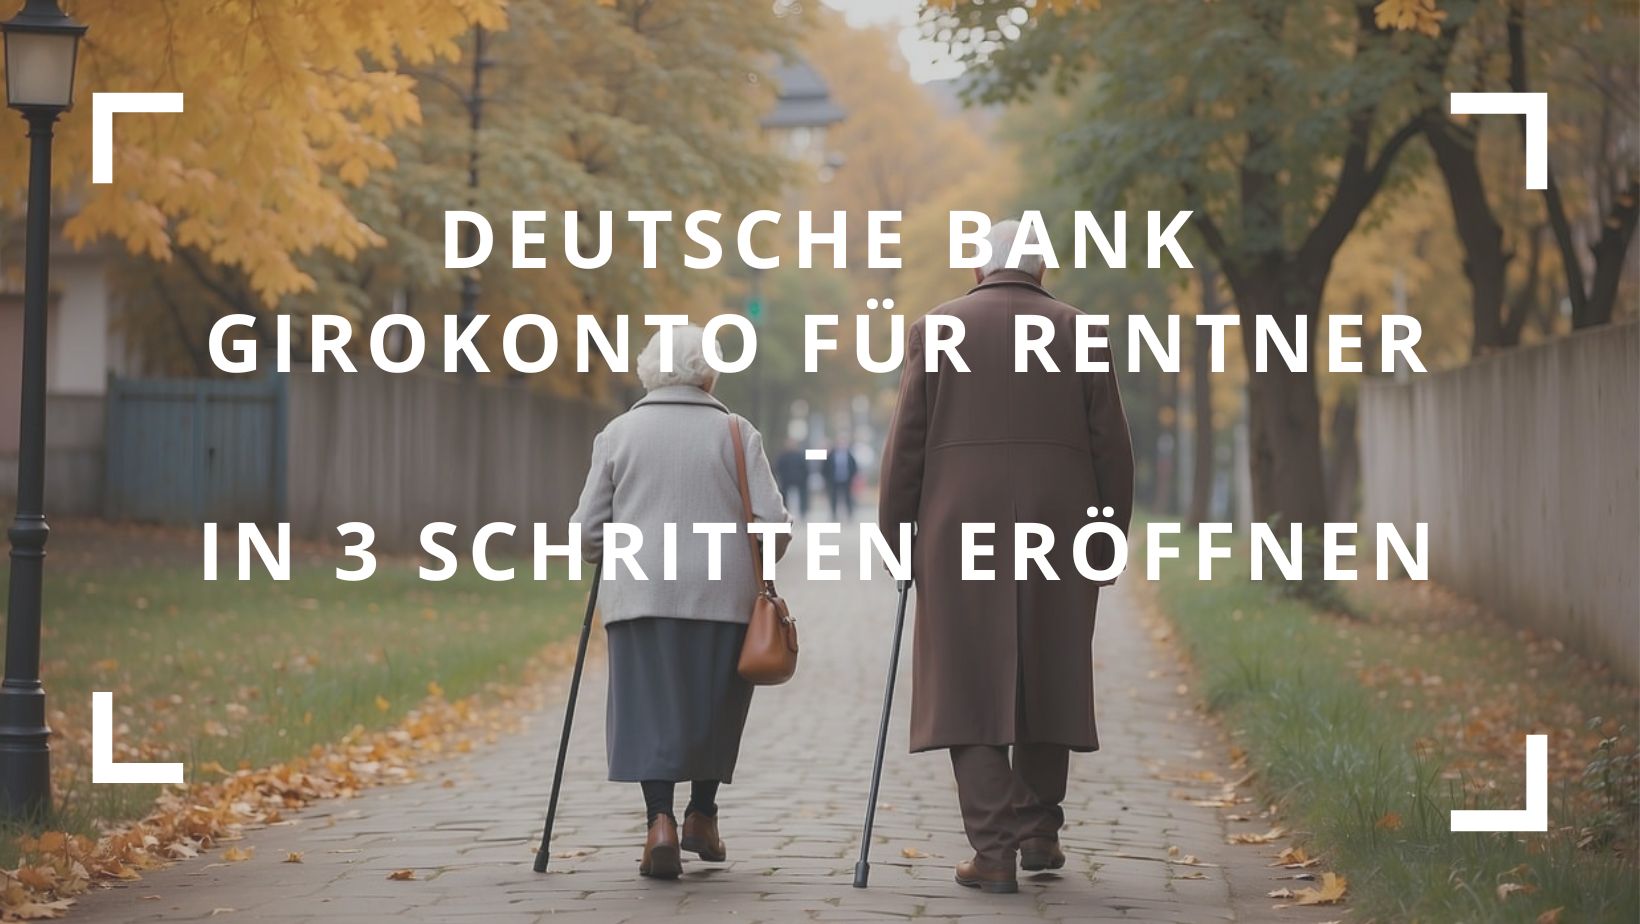 Titelbild zum Beitrag: "Deutsche Bank Girokonto für Rentner - in 3 Schritten eröffnen"